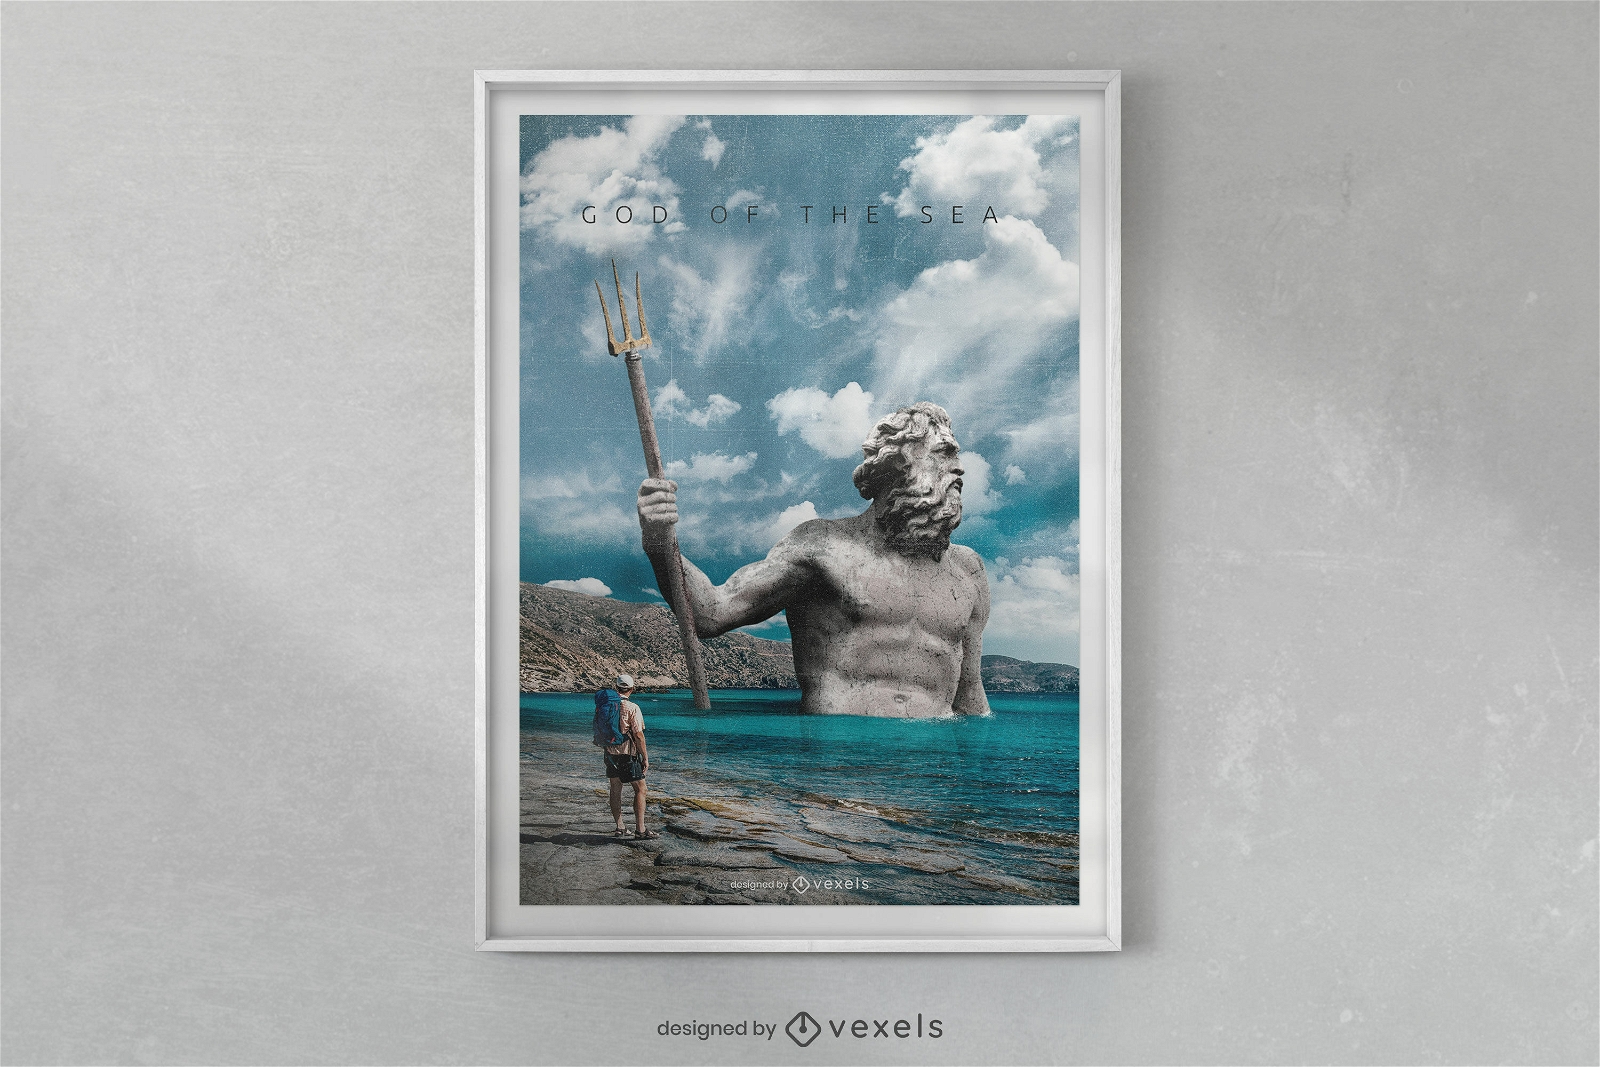 Poseidon statue on ocean poster template